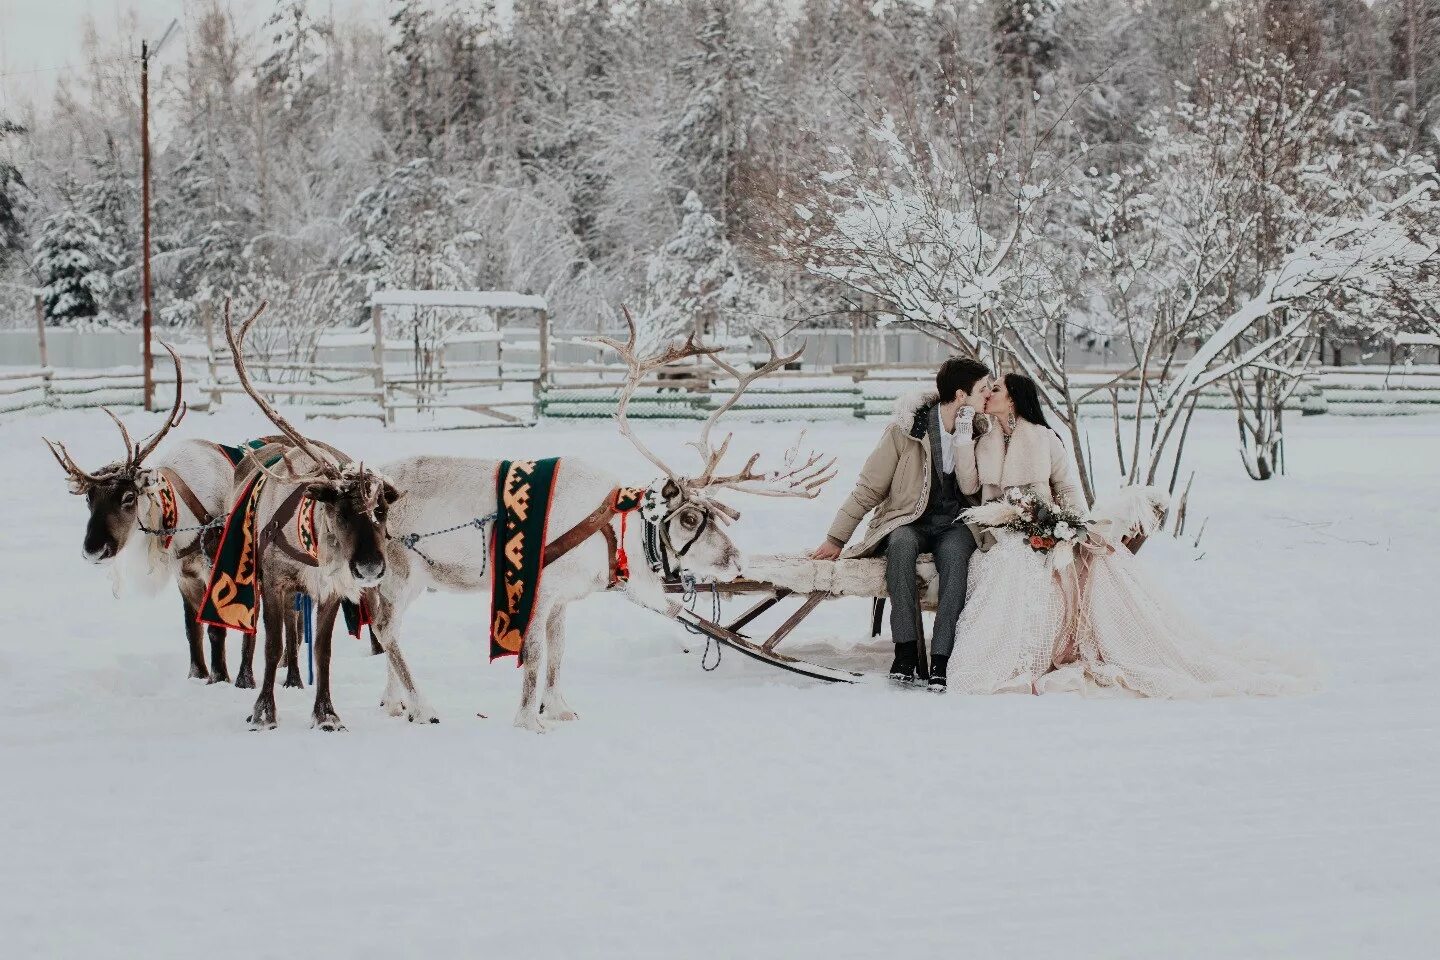 Якутская традиция уважительное отношение женщины к мужу. Якутская свадьба. Свадьба якутов. Традиционная Якутская свадьба. Свадьба в якутском стиле.